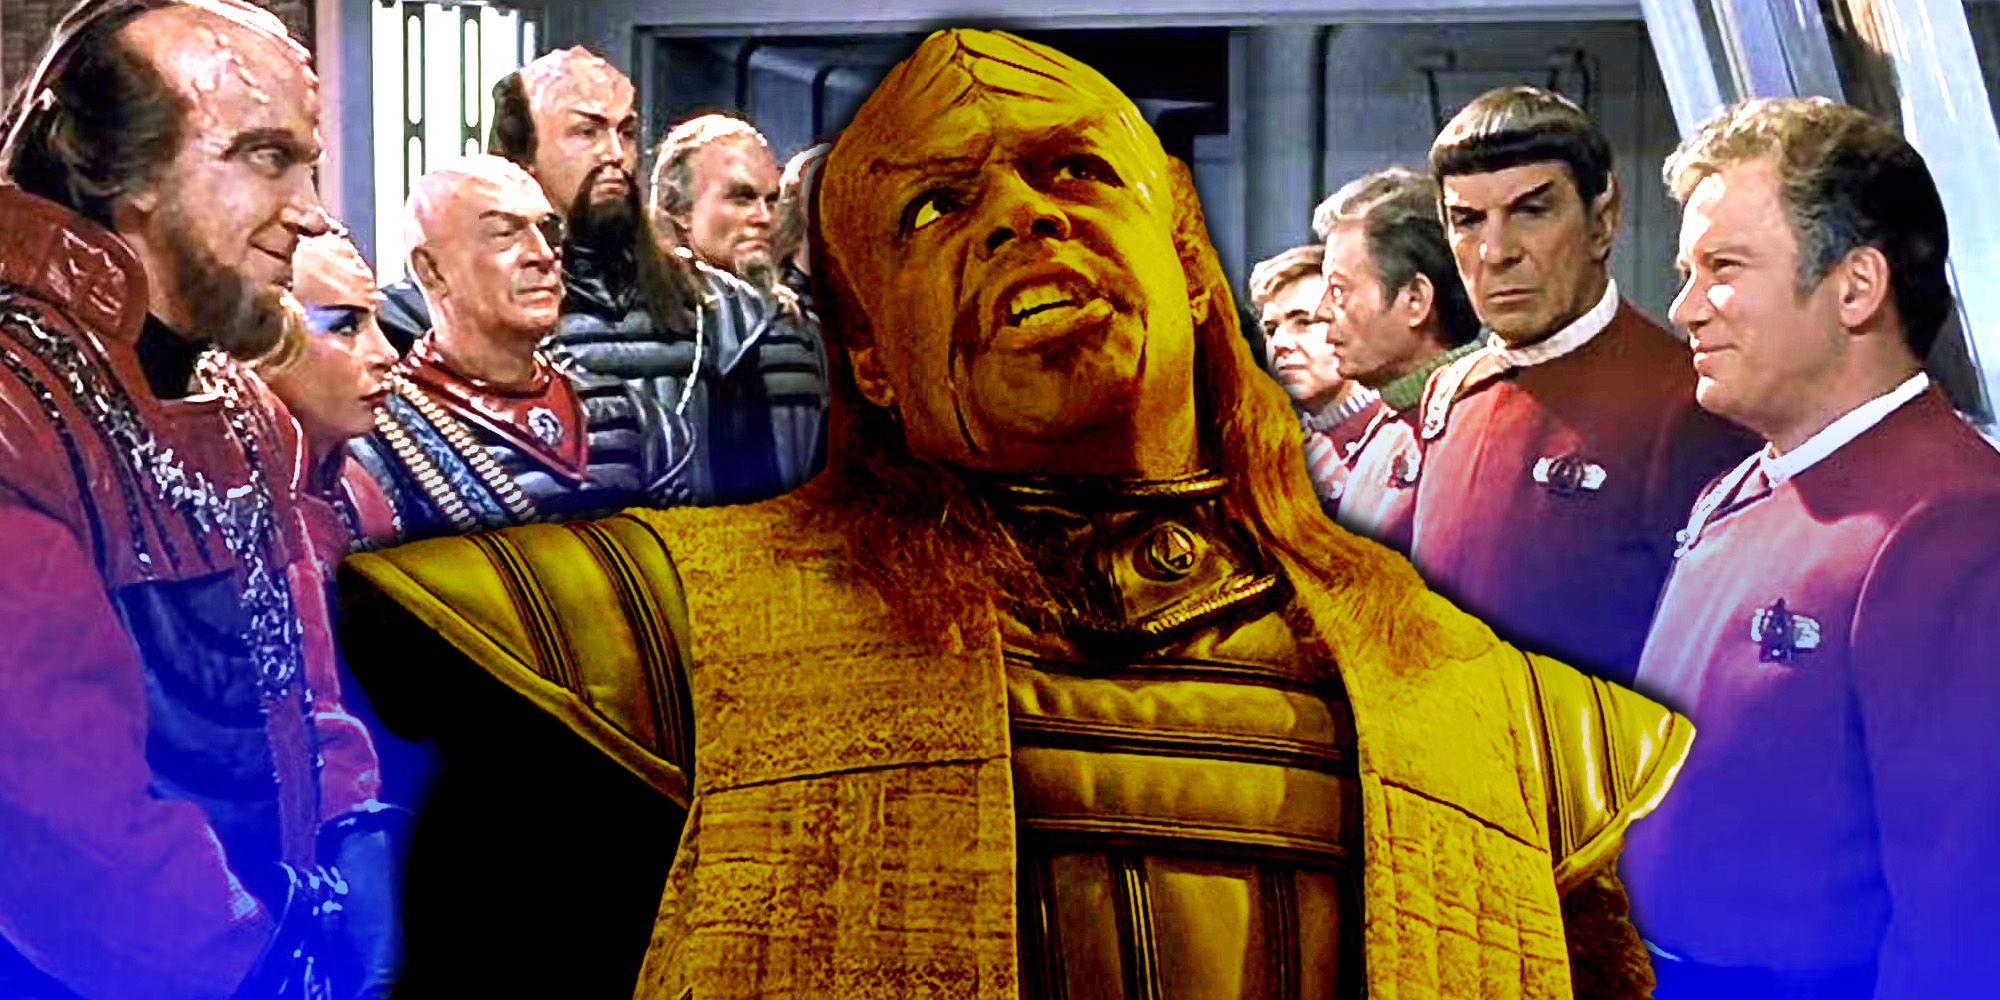 El actor de Worf recuerda la “espectacular” película de Star Trek con el elenco de la serie original